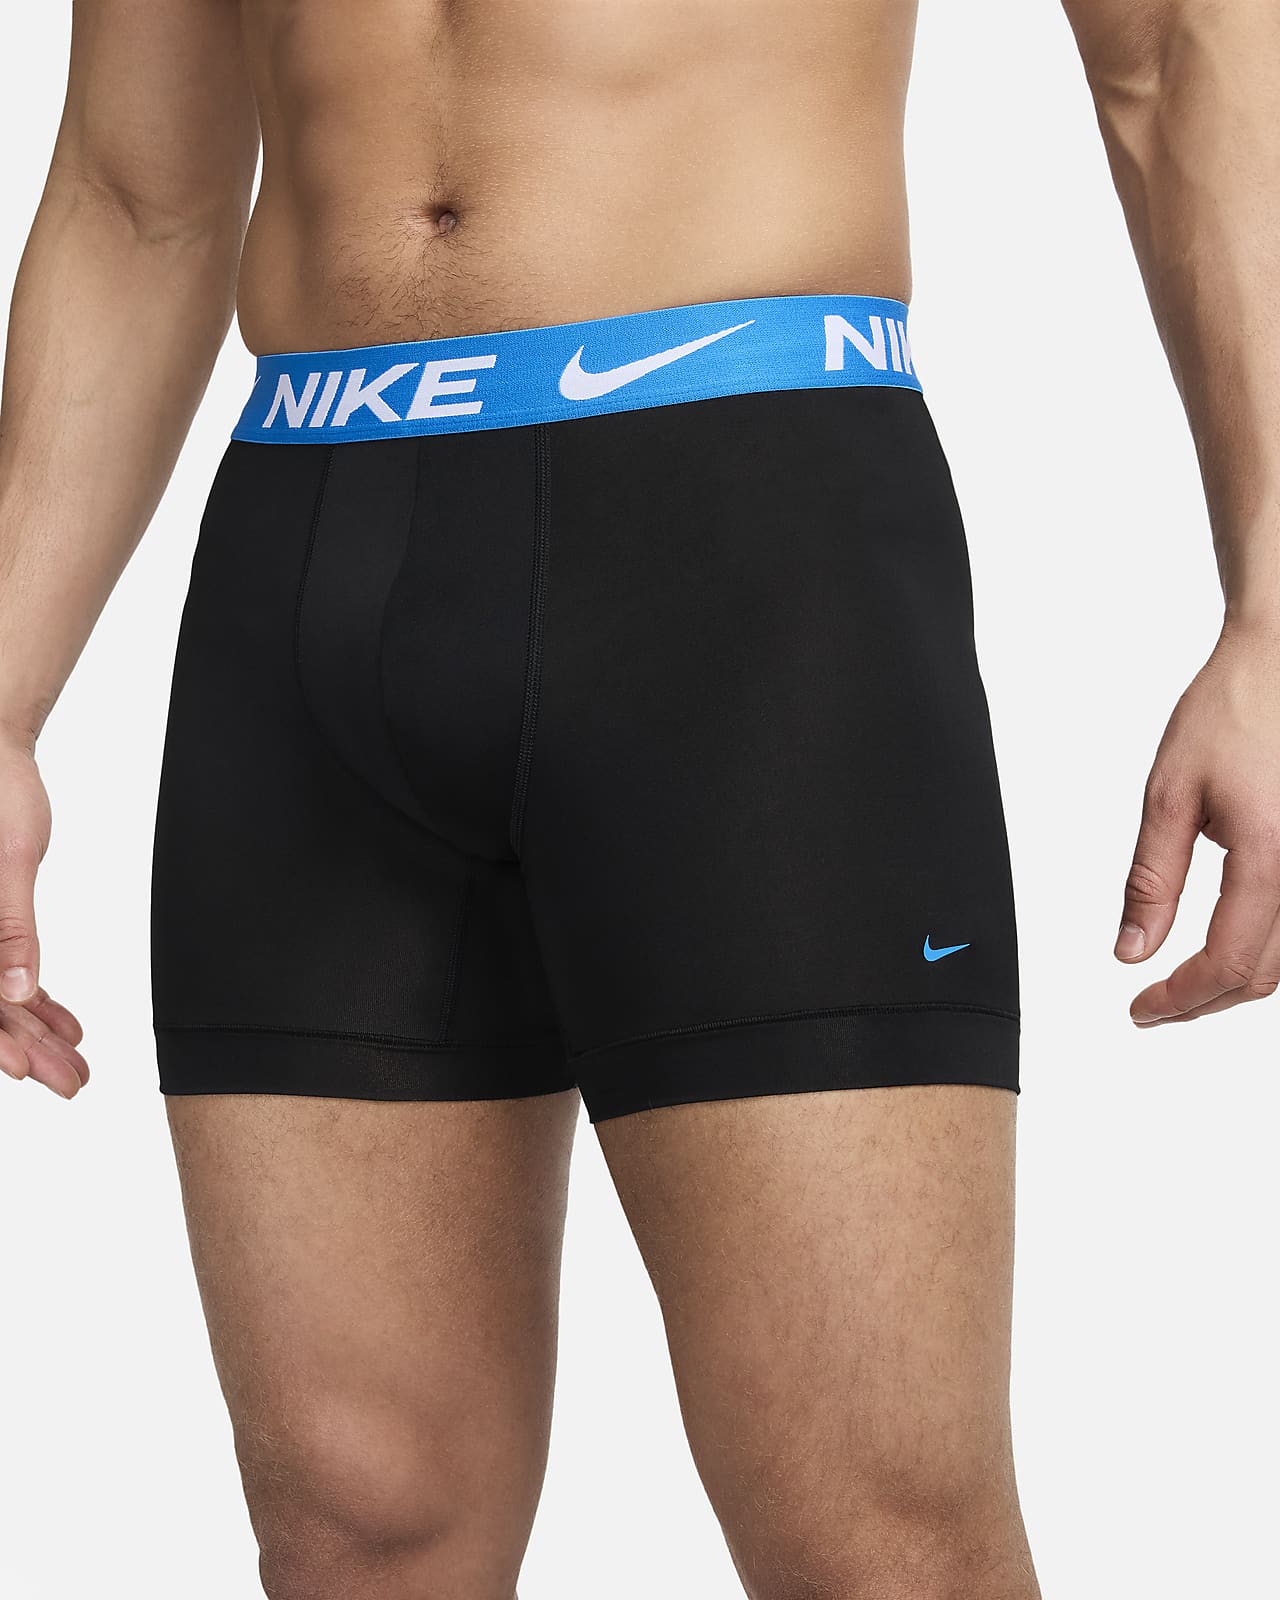 La mejor ropa interior de Nike para hombre. Nike